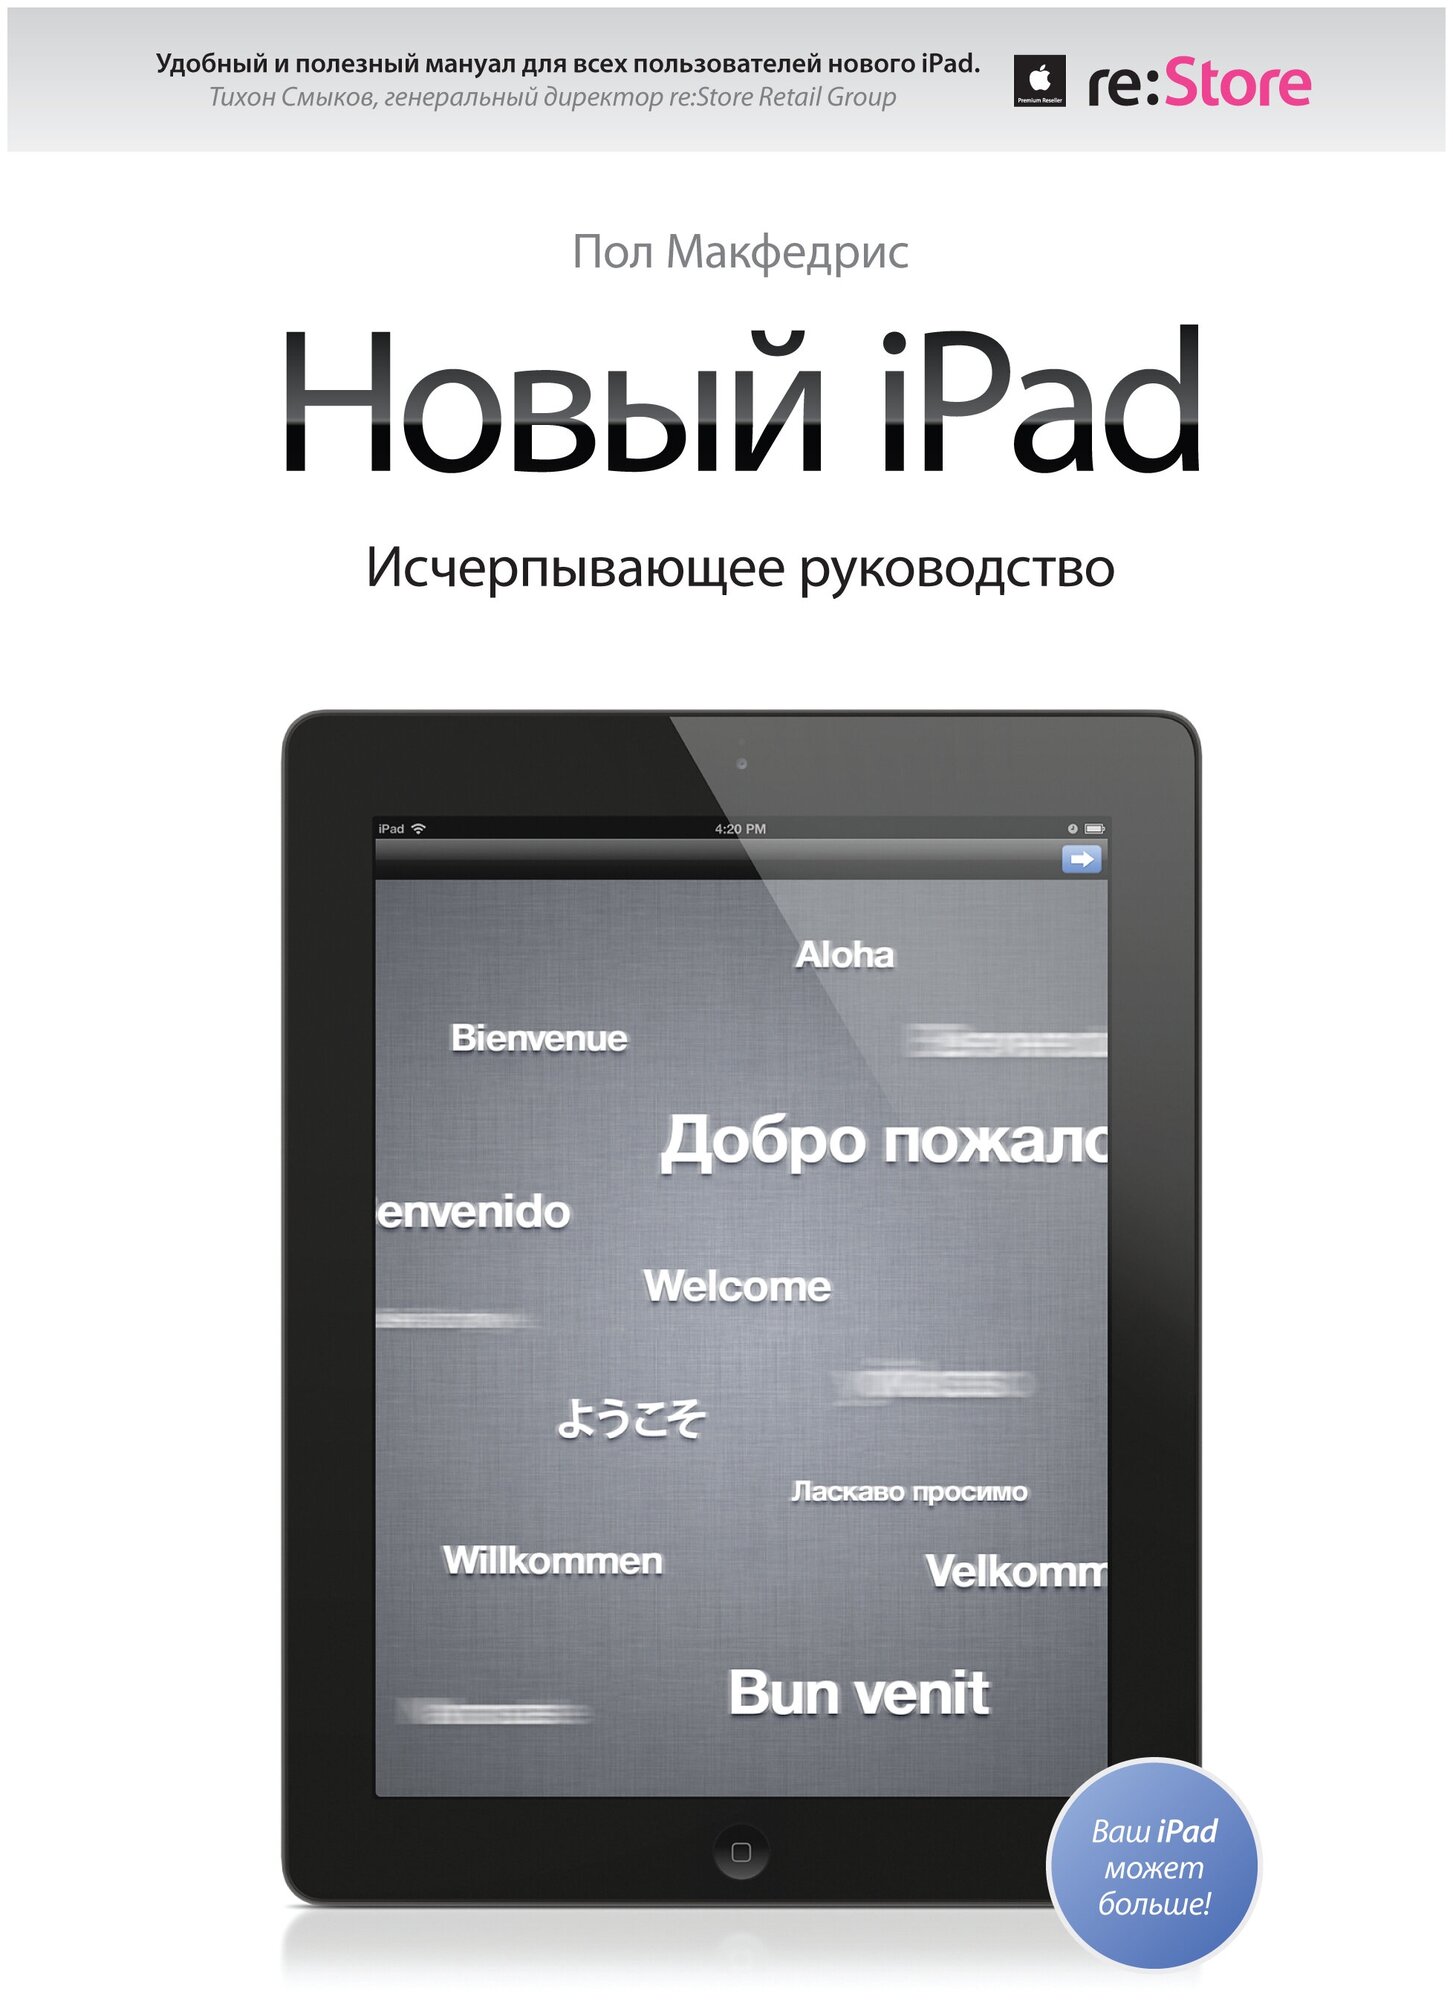 Новый iPad. Исчерпывающее руководство - фото №1